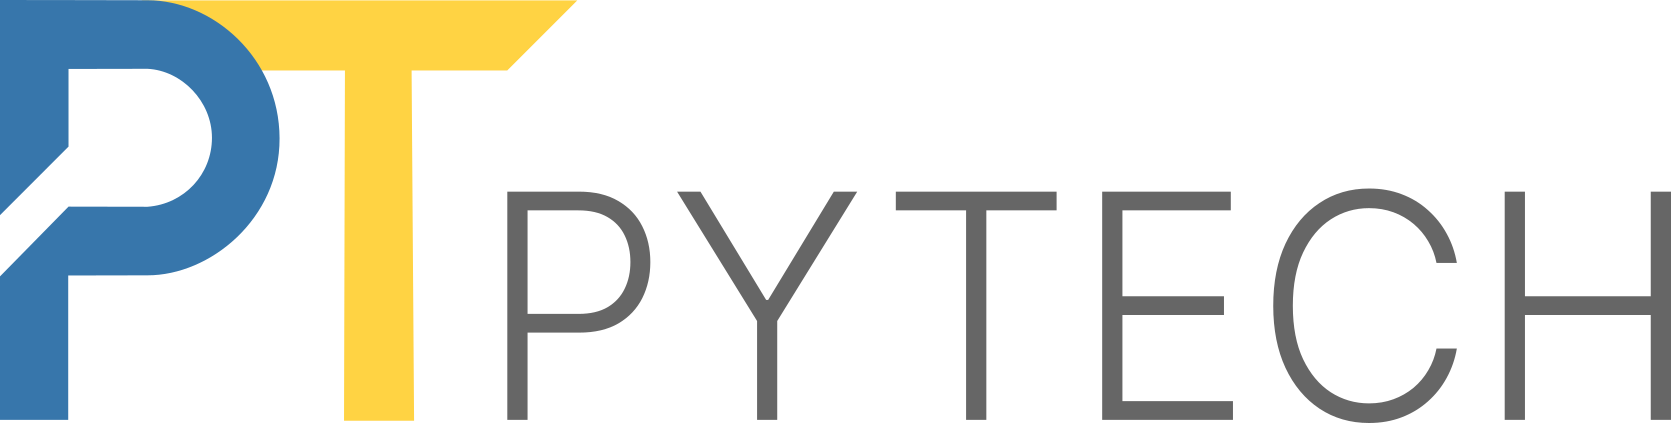 Logo PyTech